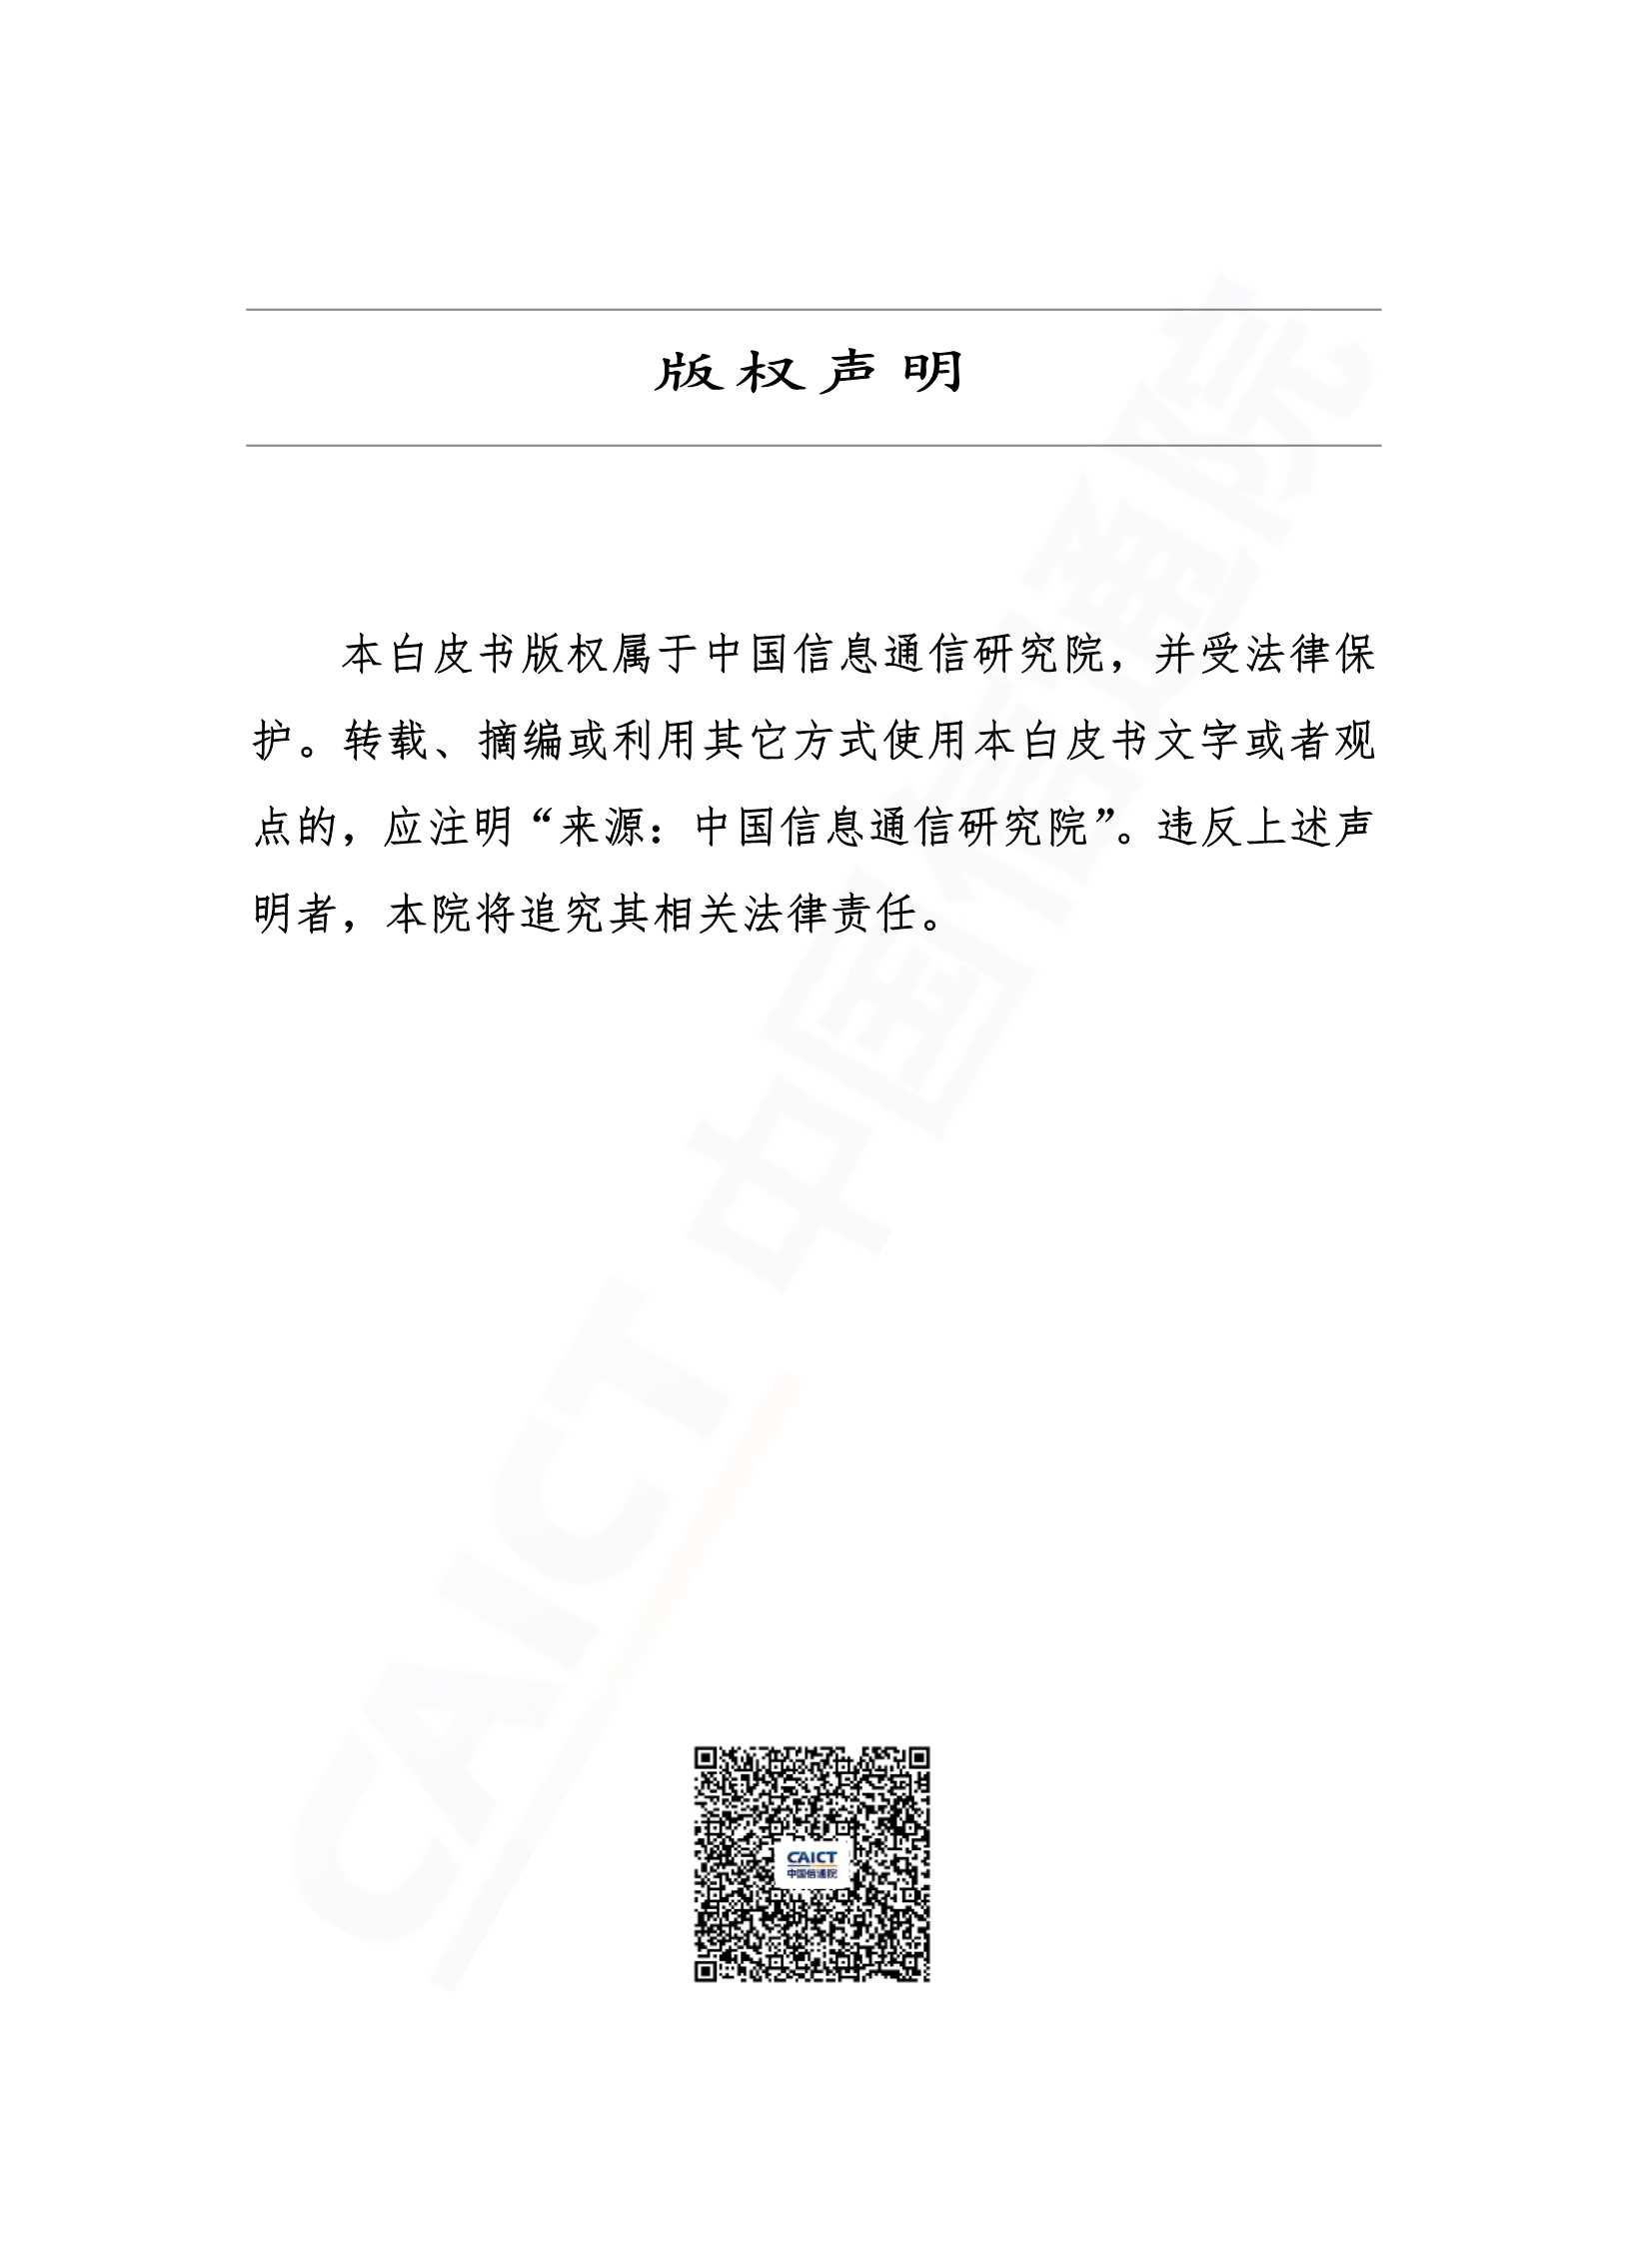 信通院-车联网行业白皮书-2021.12-44页